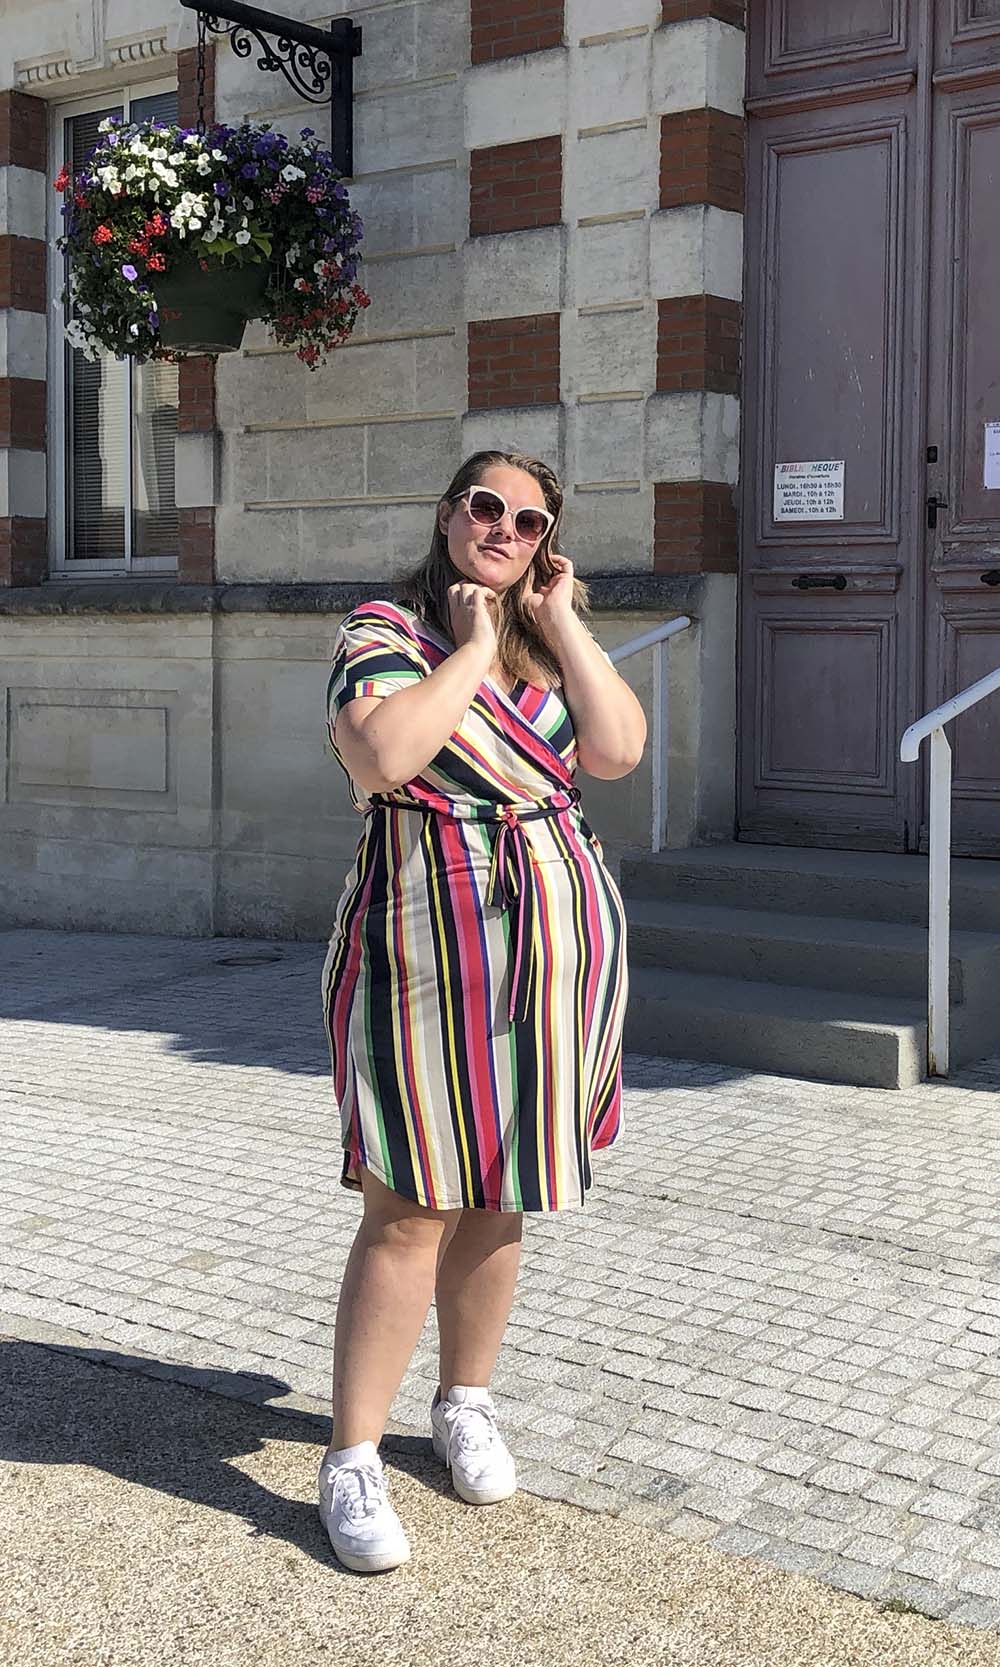 op een zonnige plein voor het gemeentehuis, in een gestreepte jurk met allerlei kleurtjes en een zonnebril op 